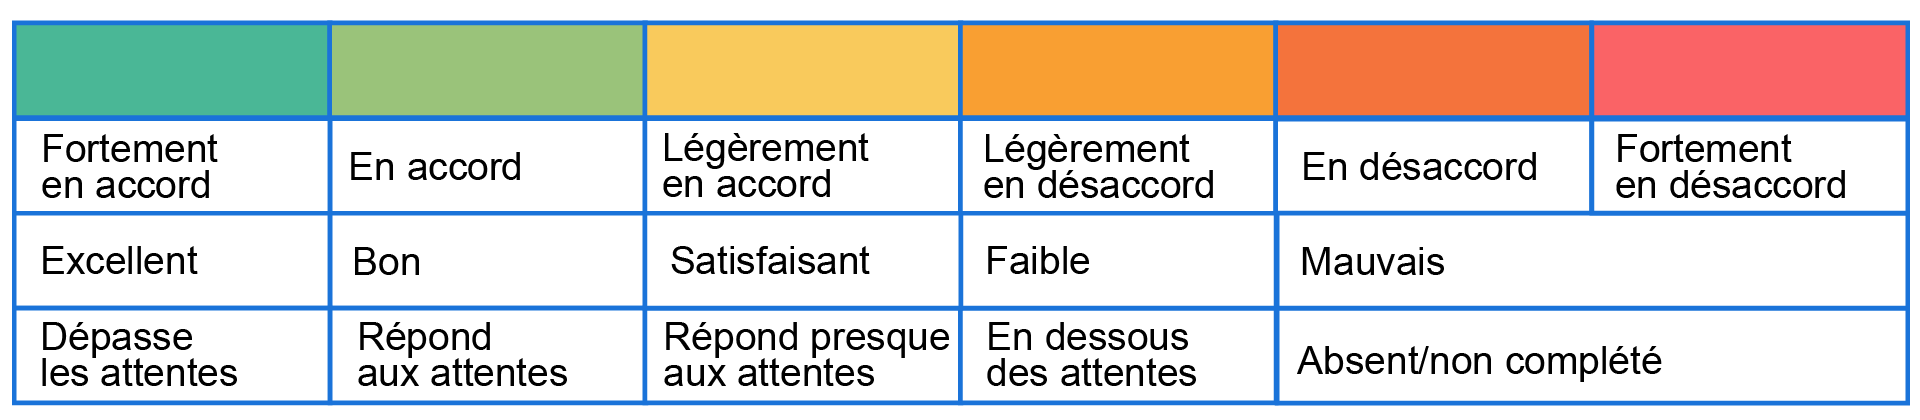 Exemples de niveaux de performance pour les échelles d'évaluation ; décrit ci-dessous